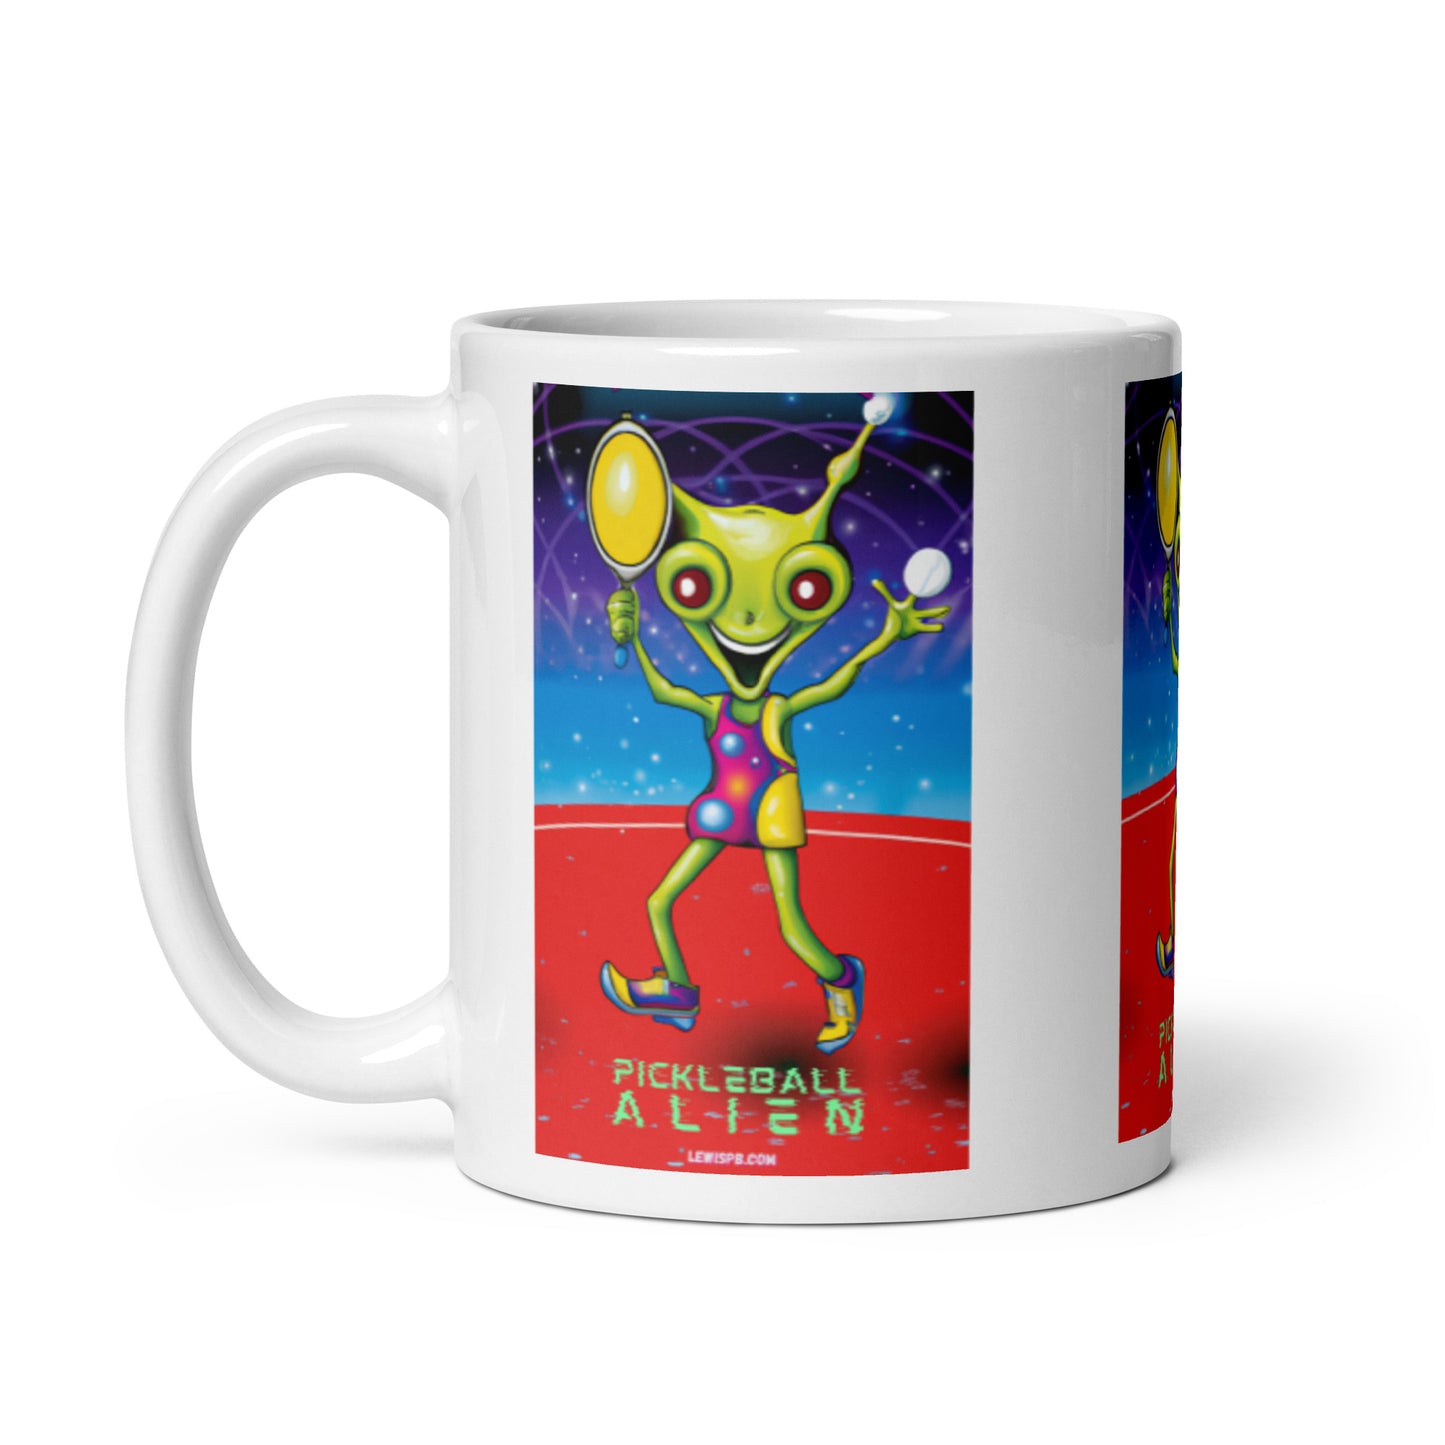 Pickleball Mug | "Pickleball Alien"